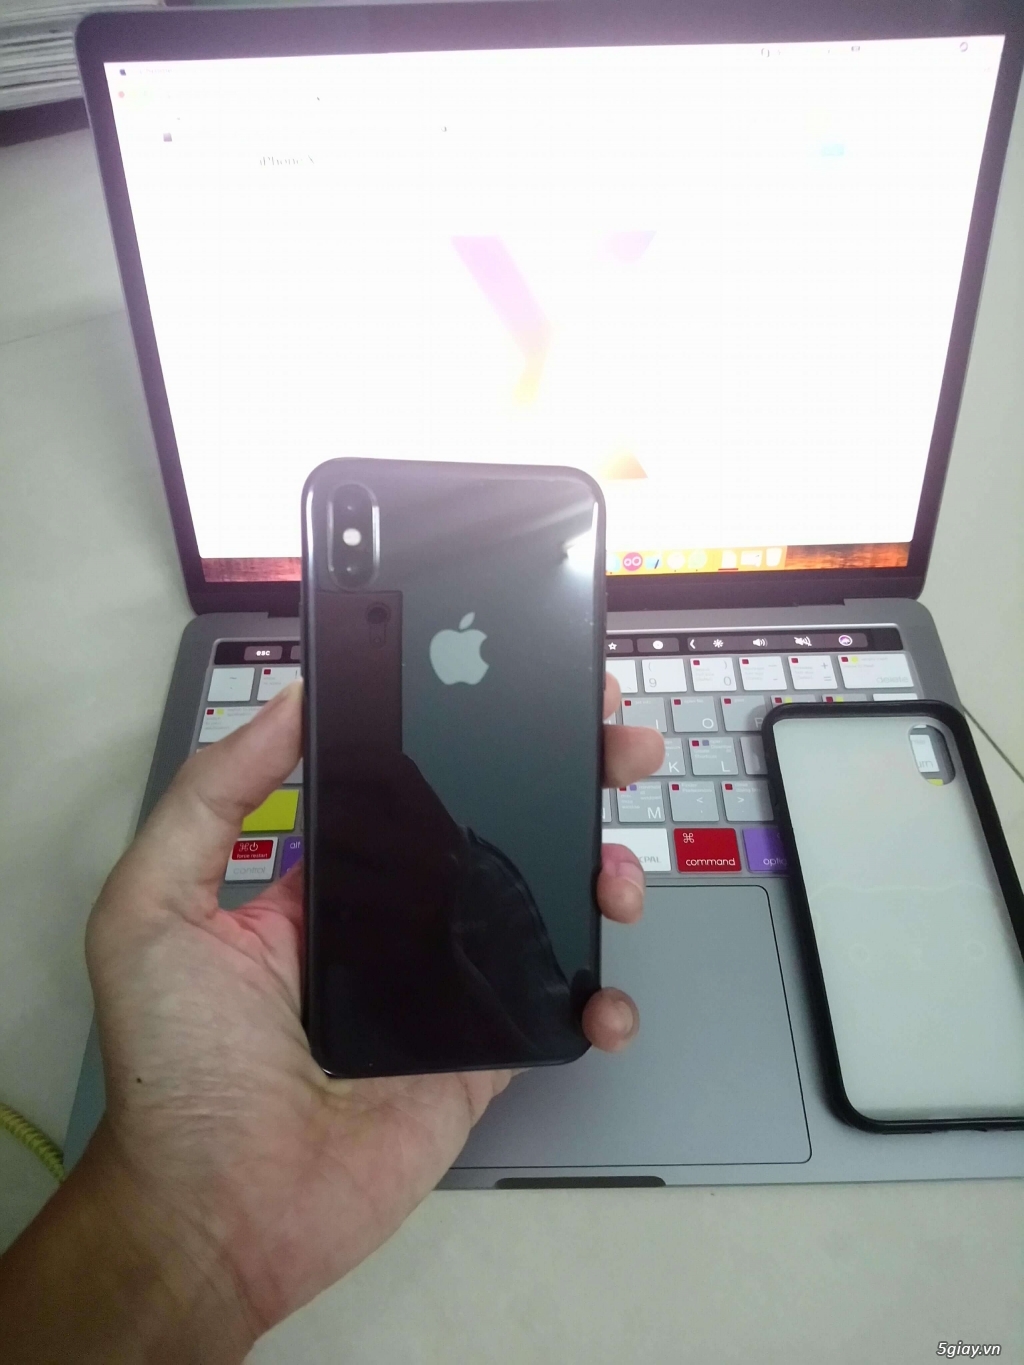 iPhone X 64GB Quốc Tế (đen bóng) 99% như mới likenew - 4